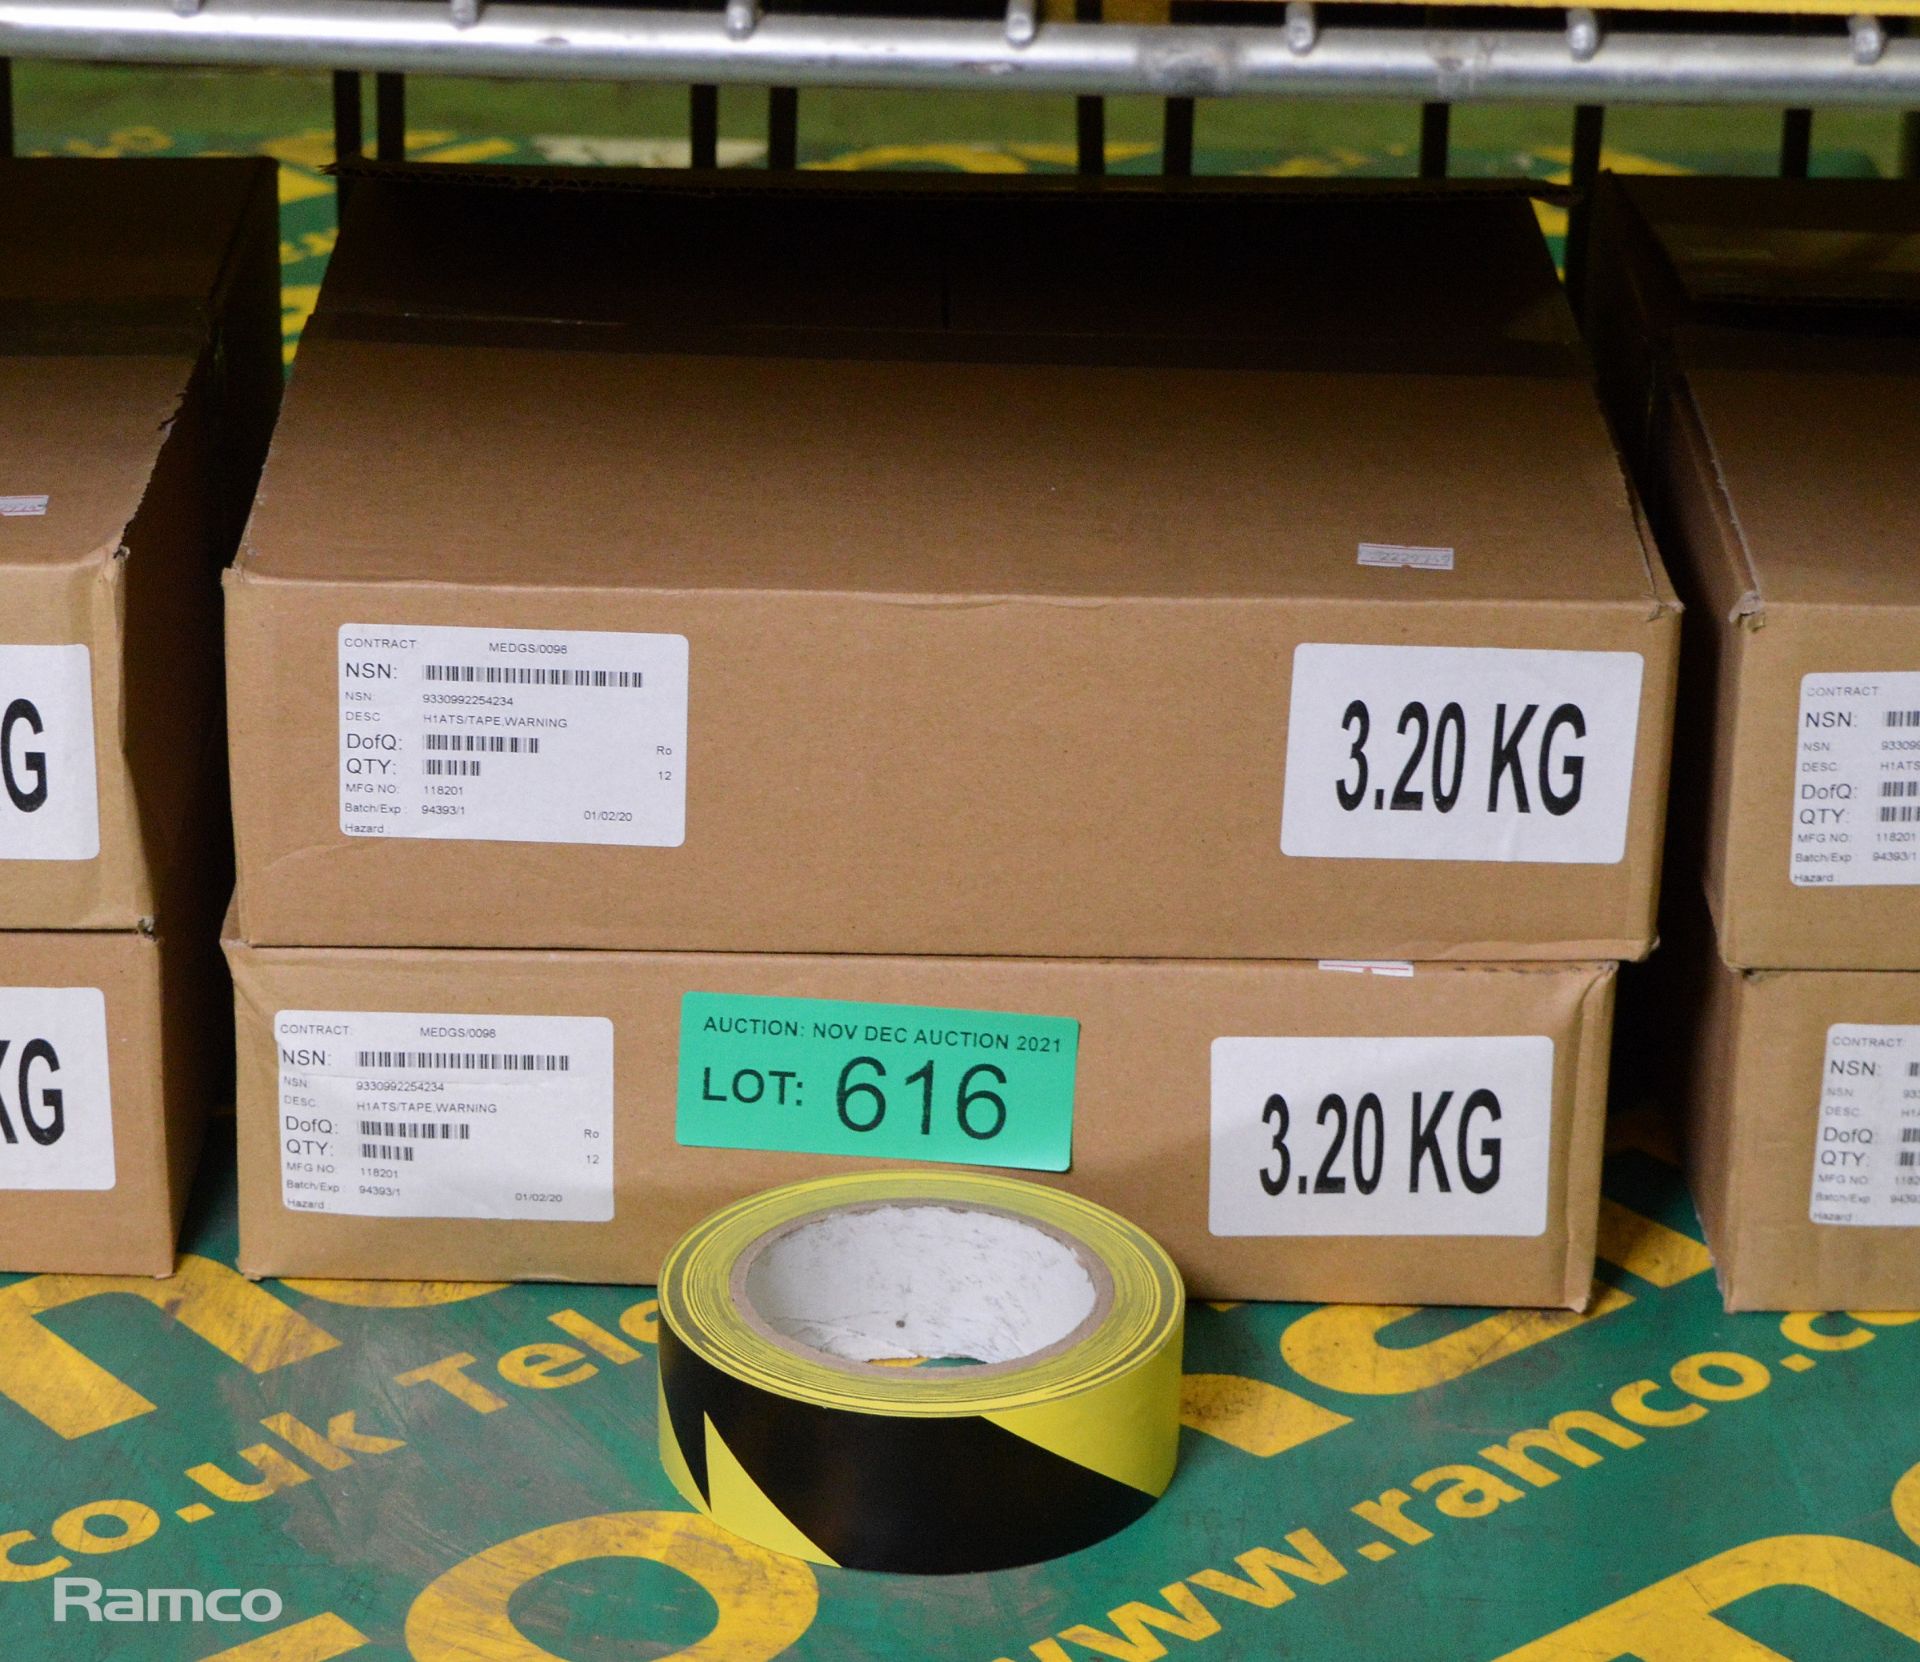 Hazard warning tape - 12 per box - 2 boxes